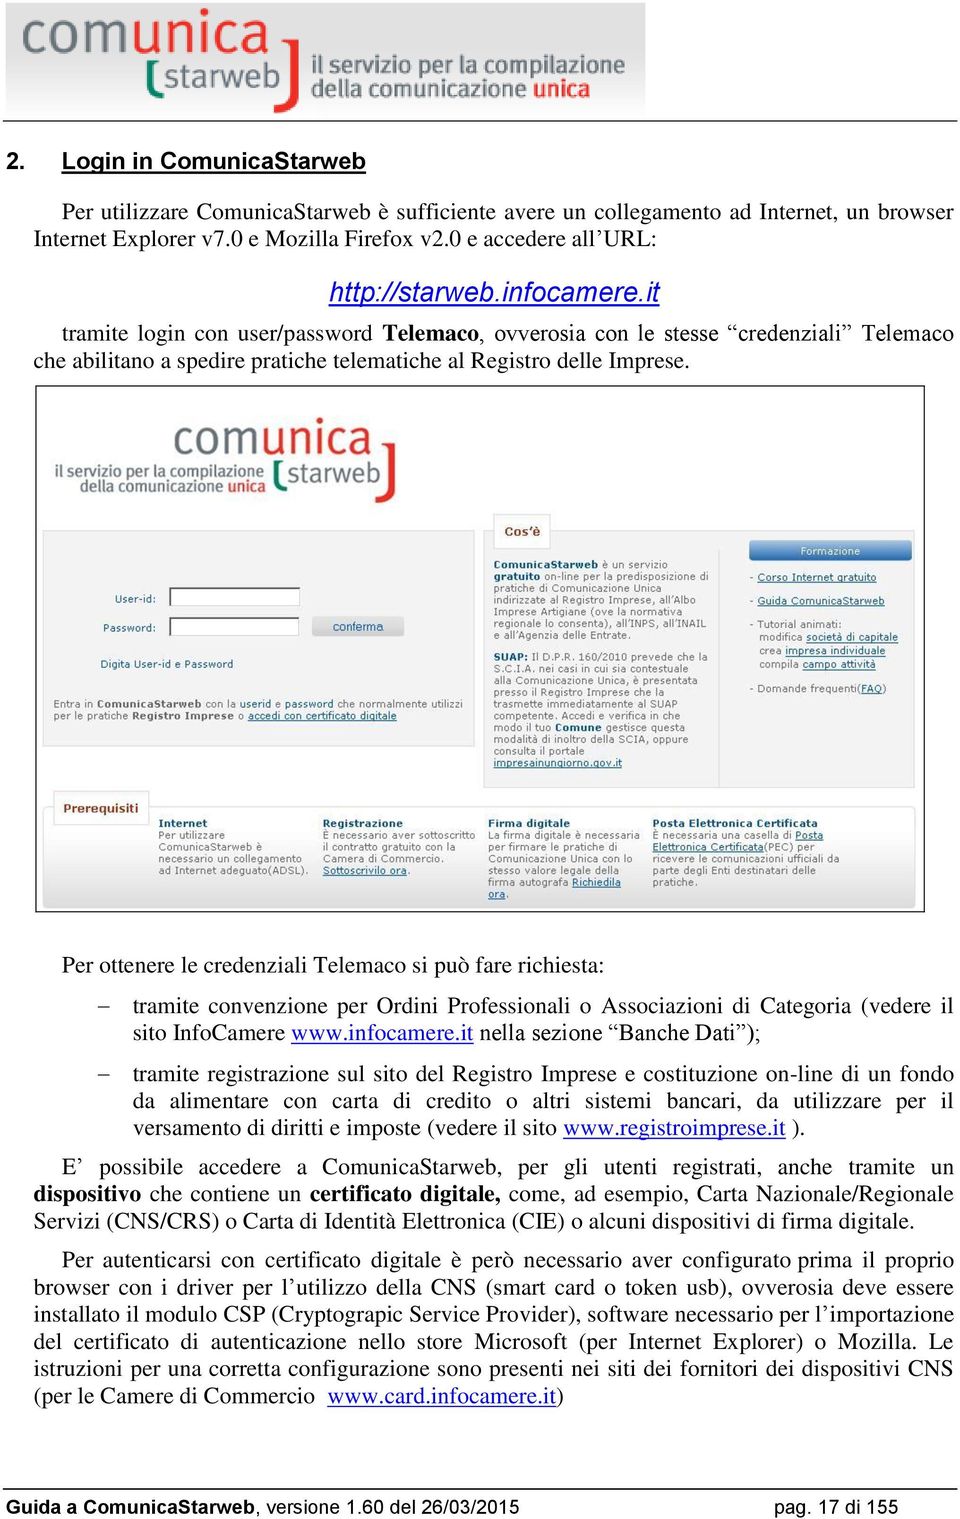 Per ottenere le credenziali Telemaco si può fare richiesta: tramite convenzione per Ordini Professionali o Associazioni di Categoria (vedere il sito InfoCamere www.infocamere.